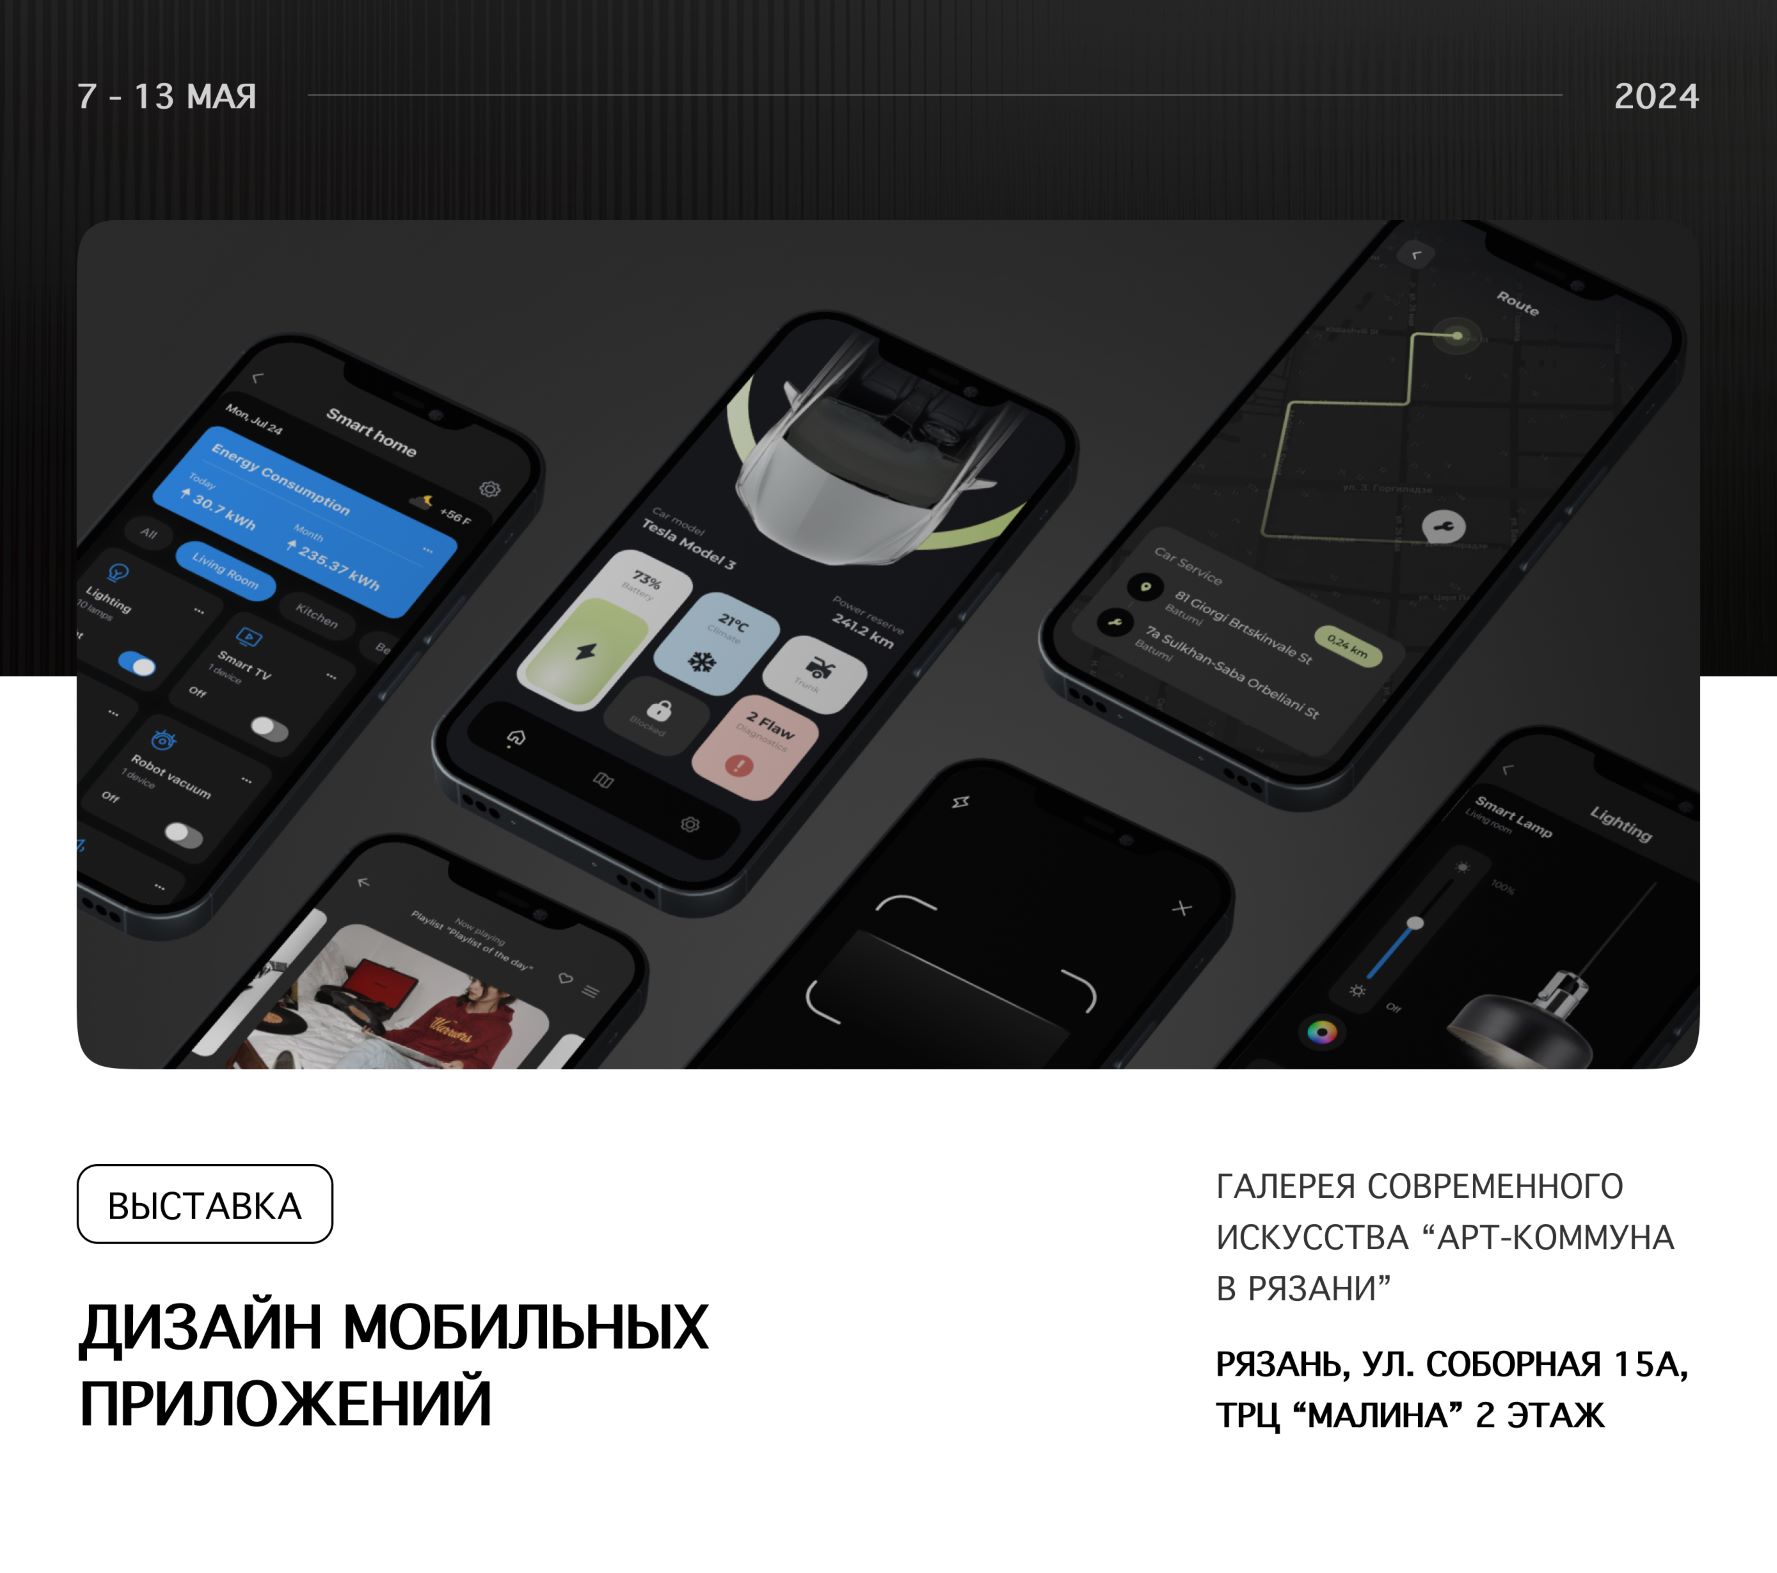 Выставка “Дизайн мобильных приложений”